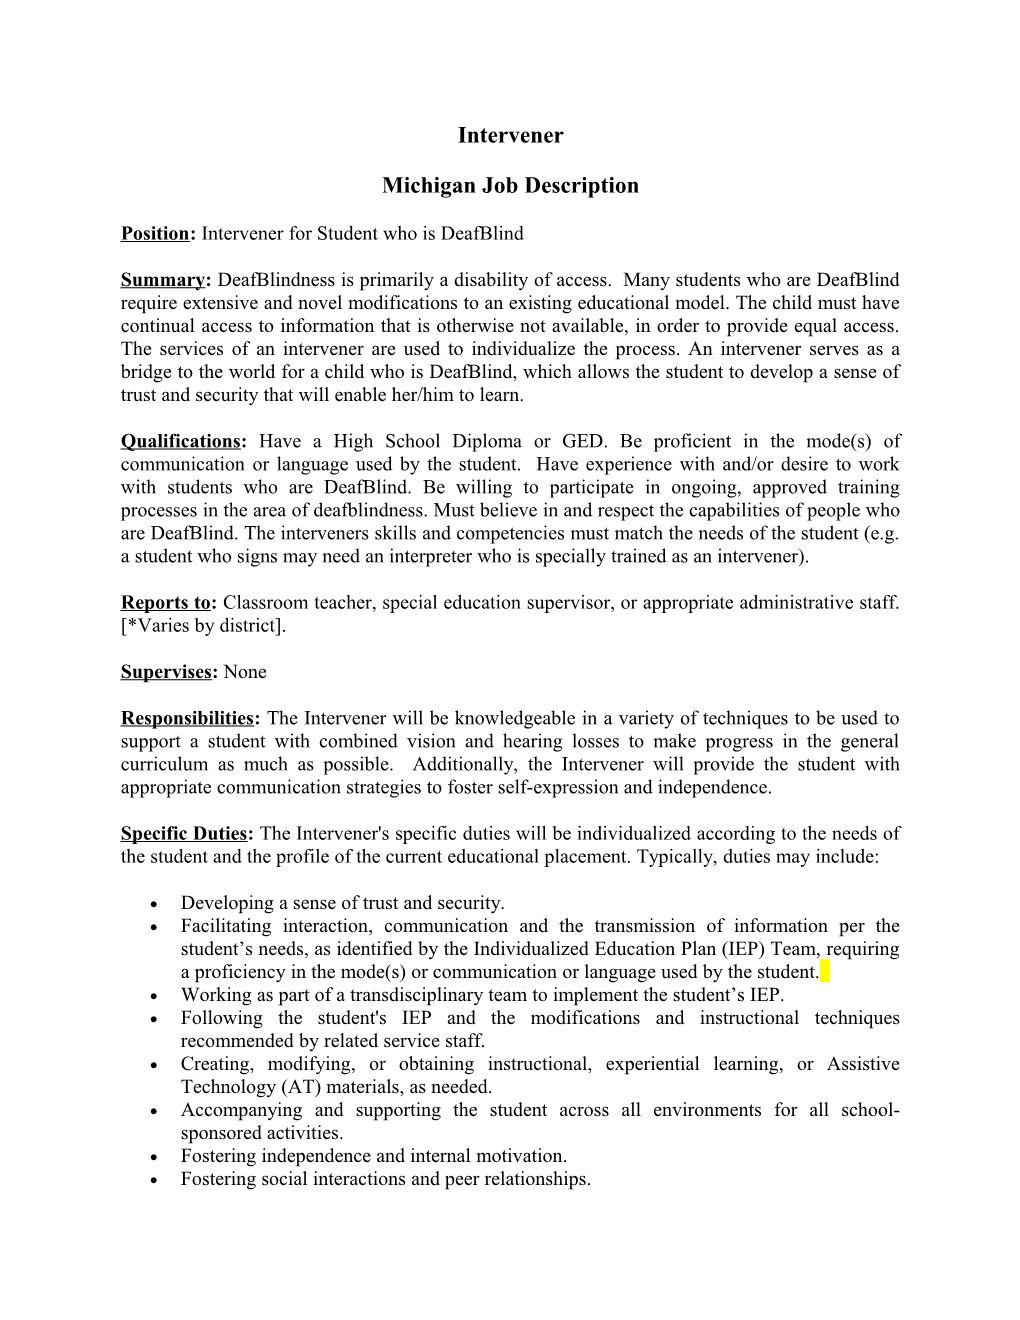 Michigan Job Description